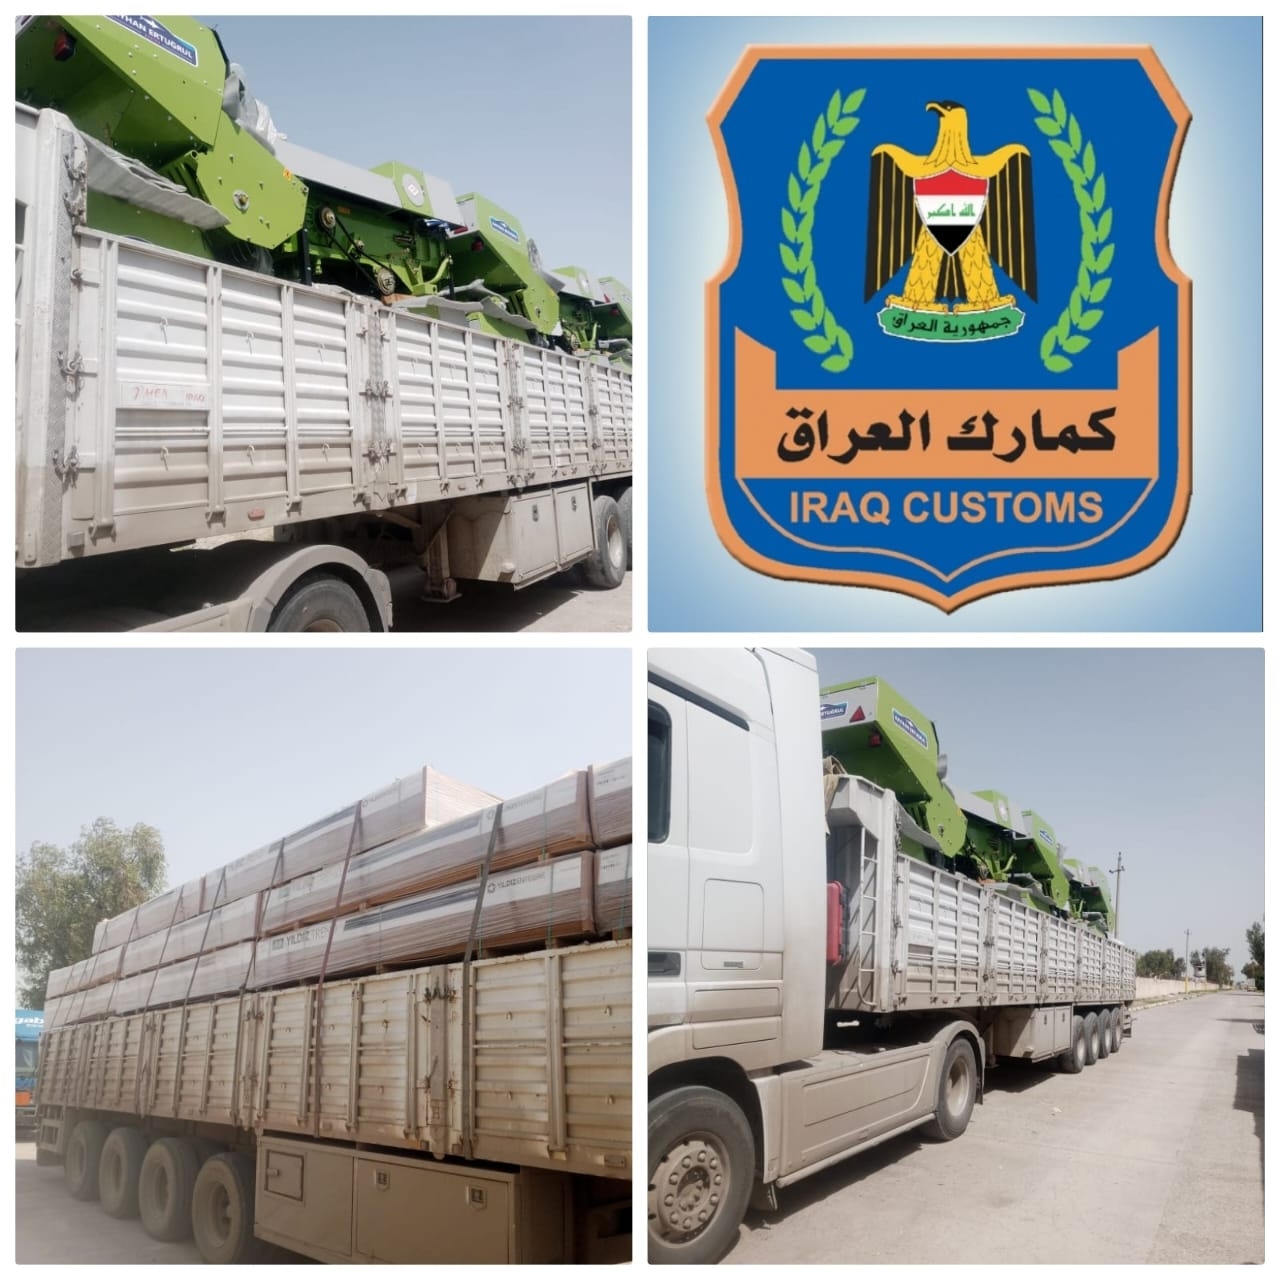 الكمارك تضبط شاحنتين مخالفة للضوابط عند مداخل بغداد